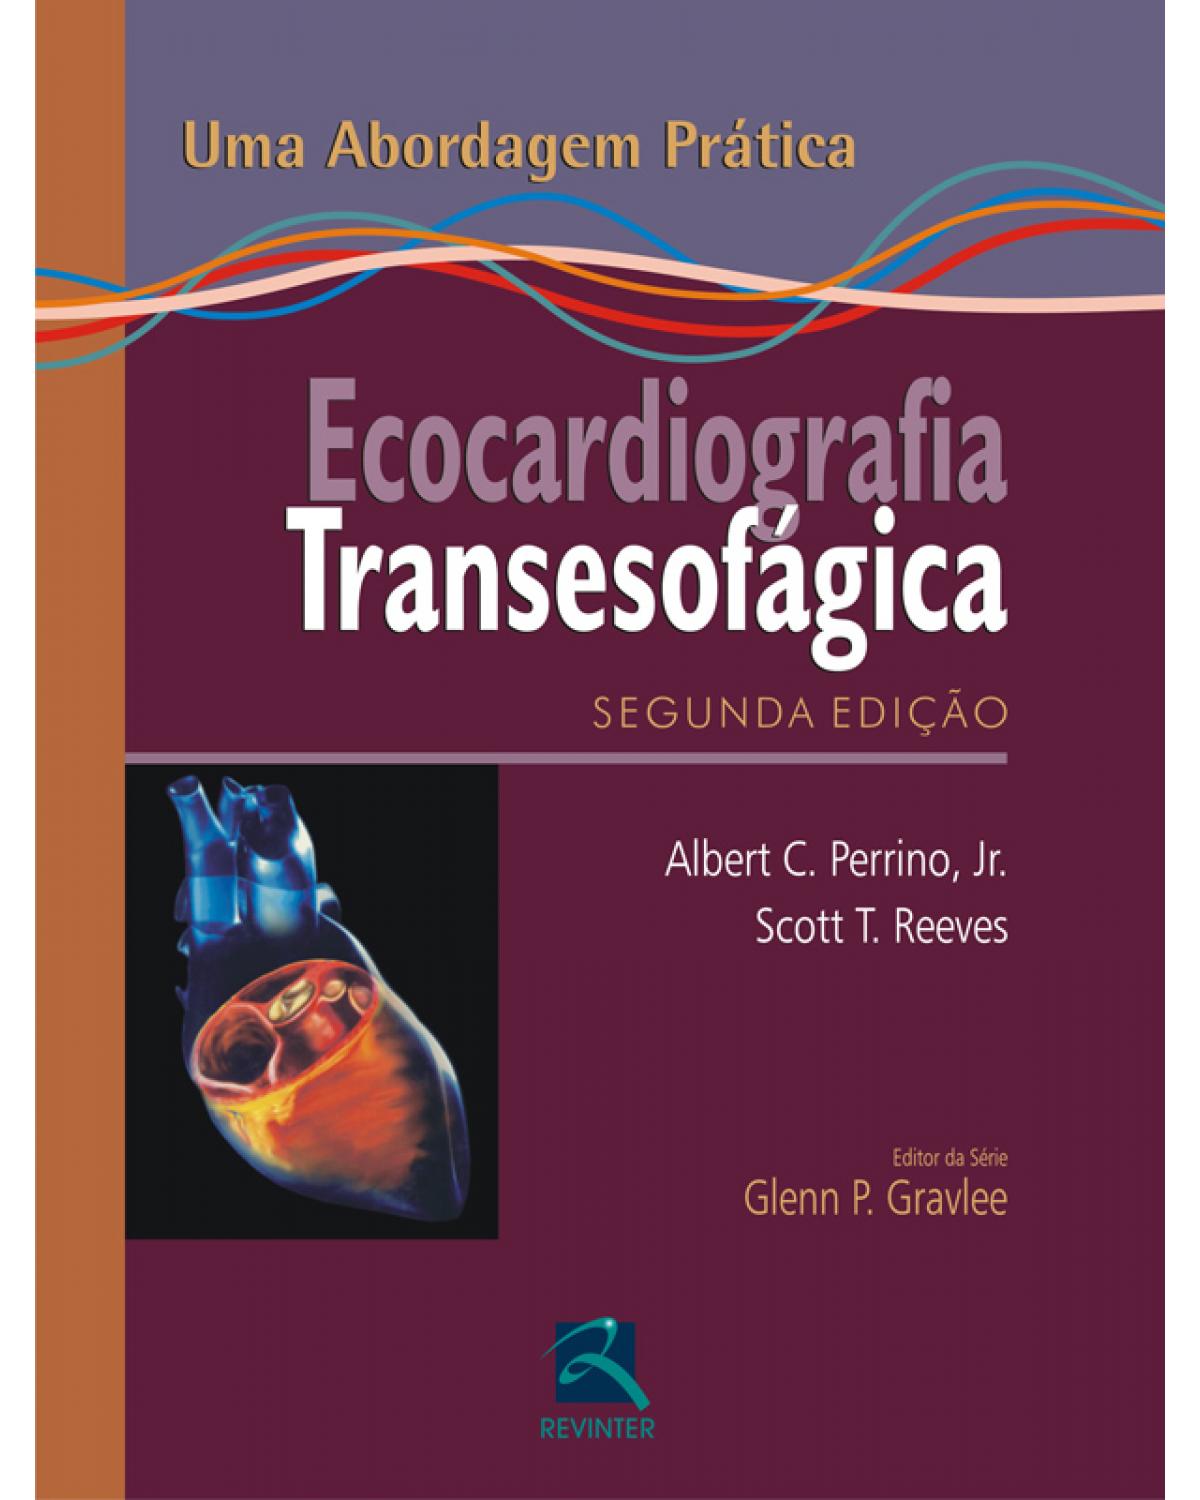 Ecocardiografia transesofágica - uma abordagem prática - 2ª Edição | 2010